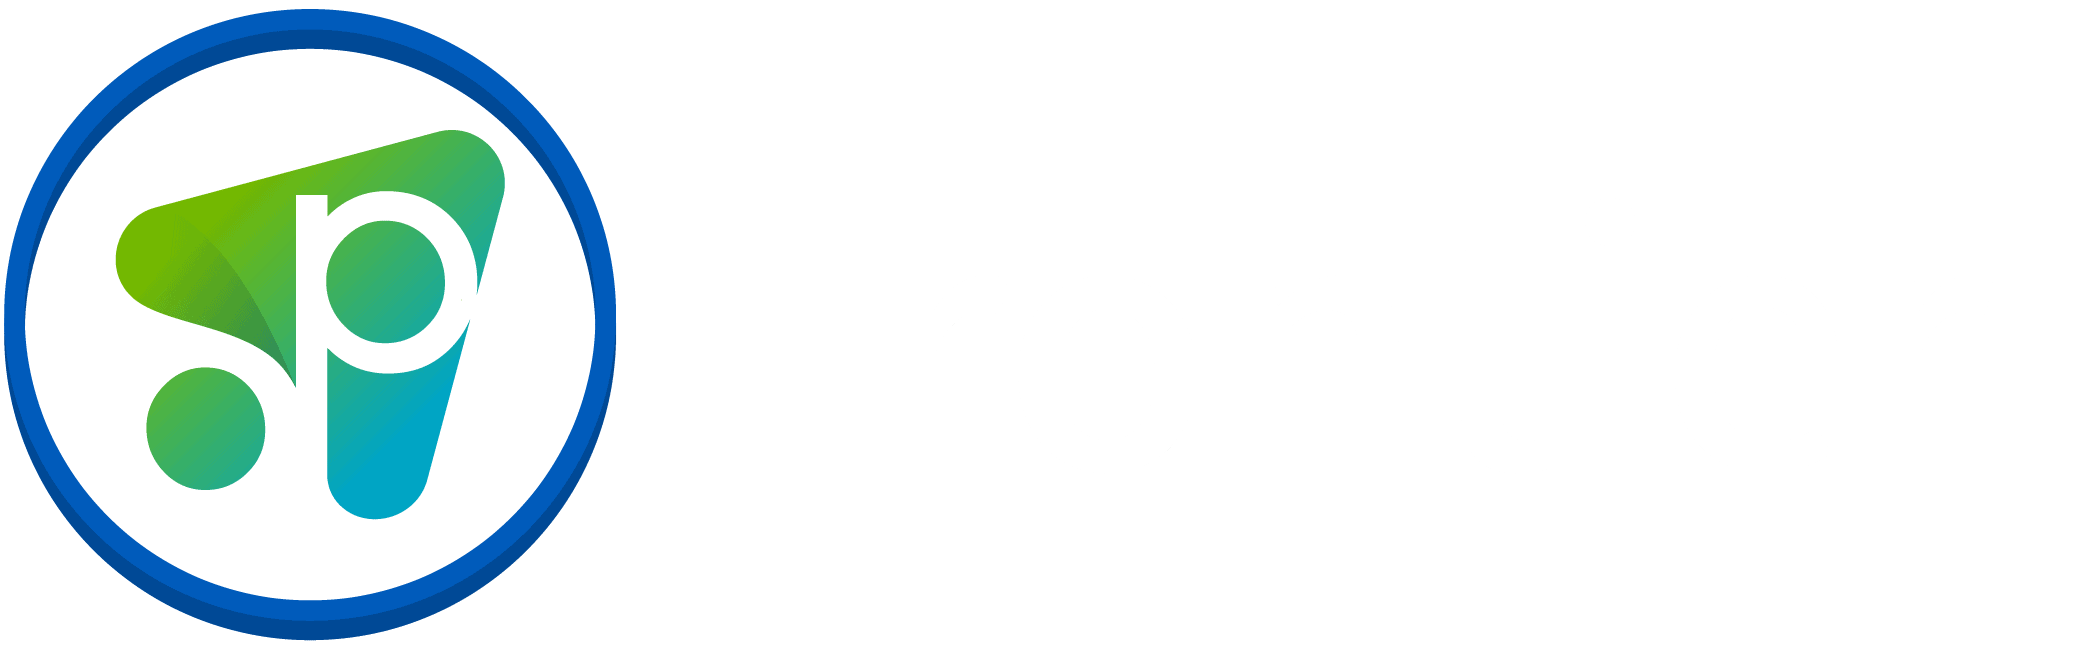 Frontier - Crowdsourcing Week